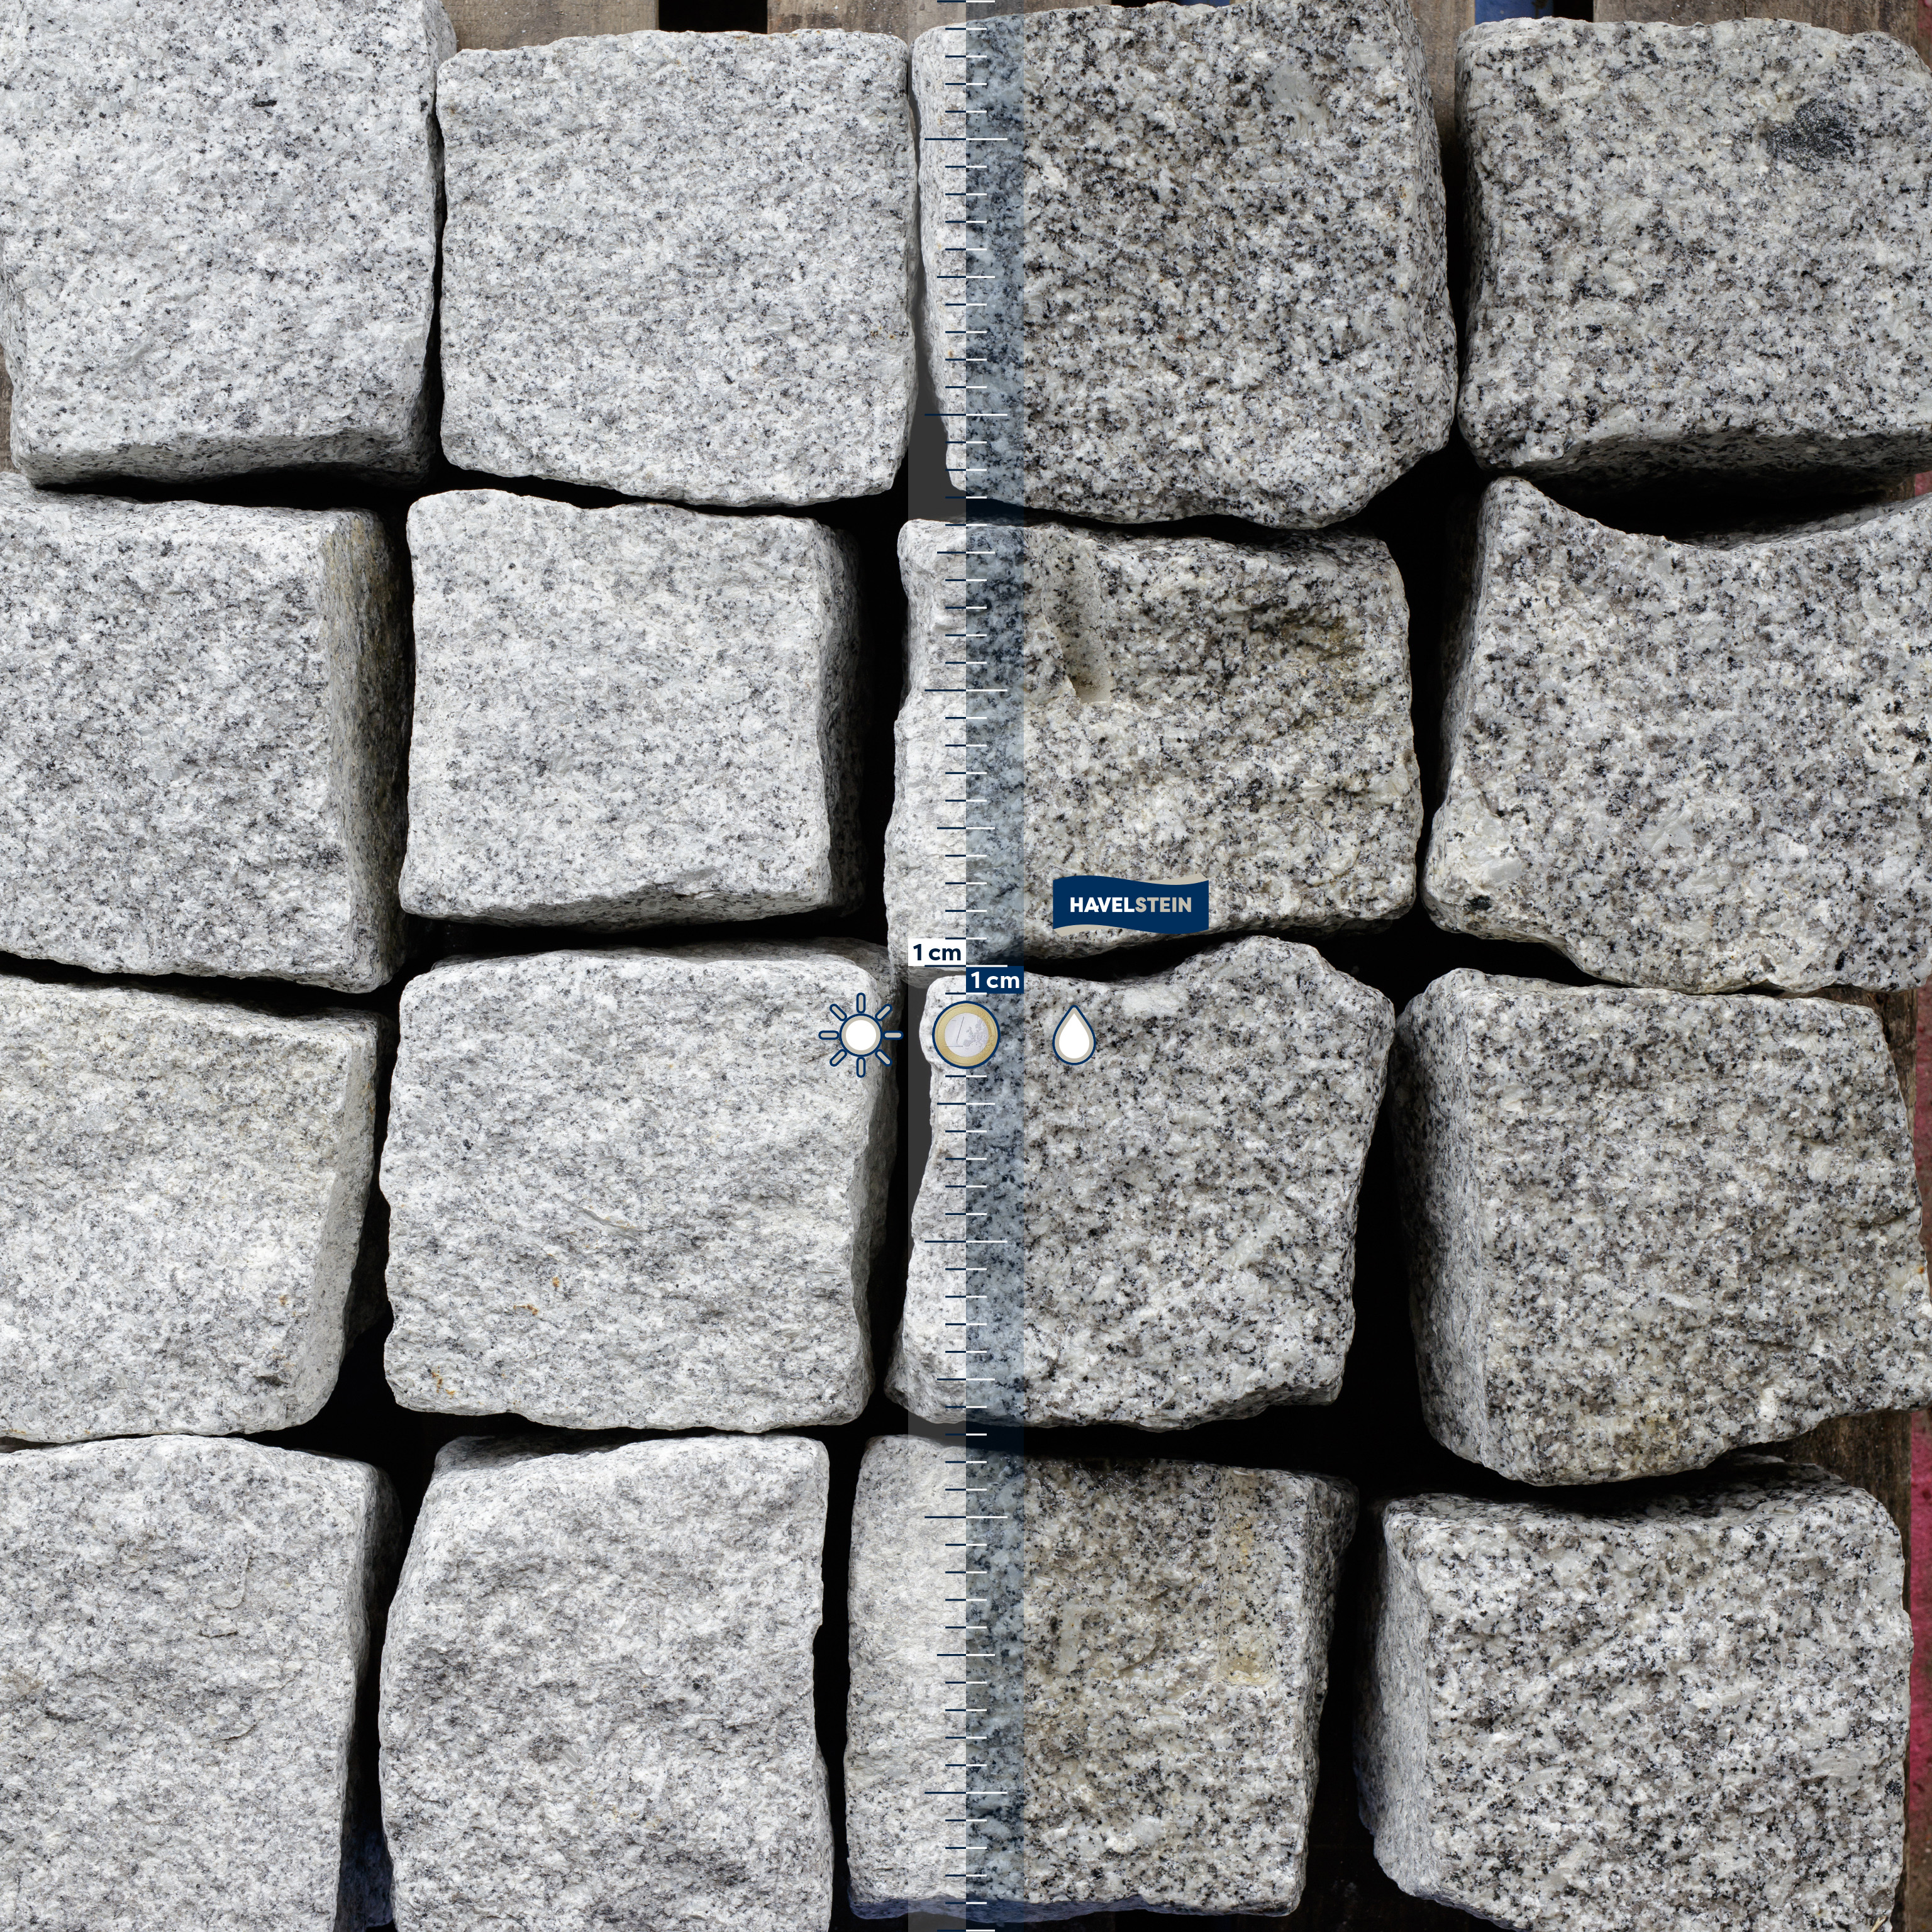 Pflasterstein, Granit grau (Schlesisch), Granit Gro?pflaster schlesisch, Mittelkorn, 15 x 17 cm, grau, Ergiebigkeit 1 t = ca. 2,5 m? 